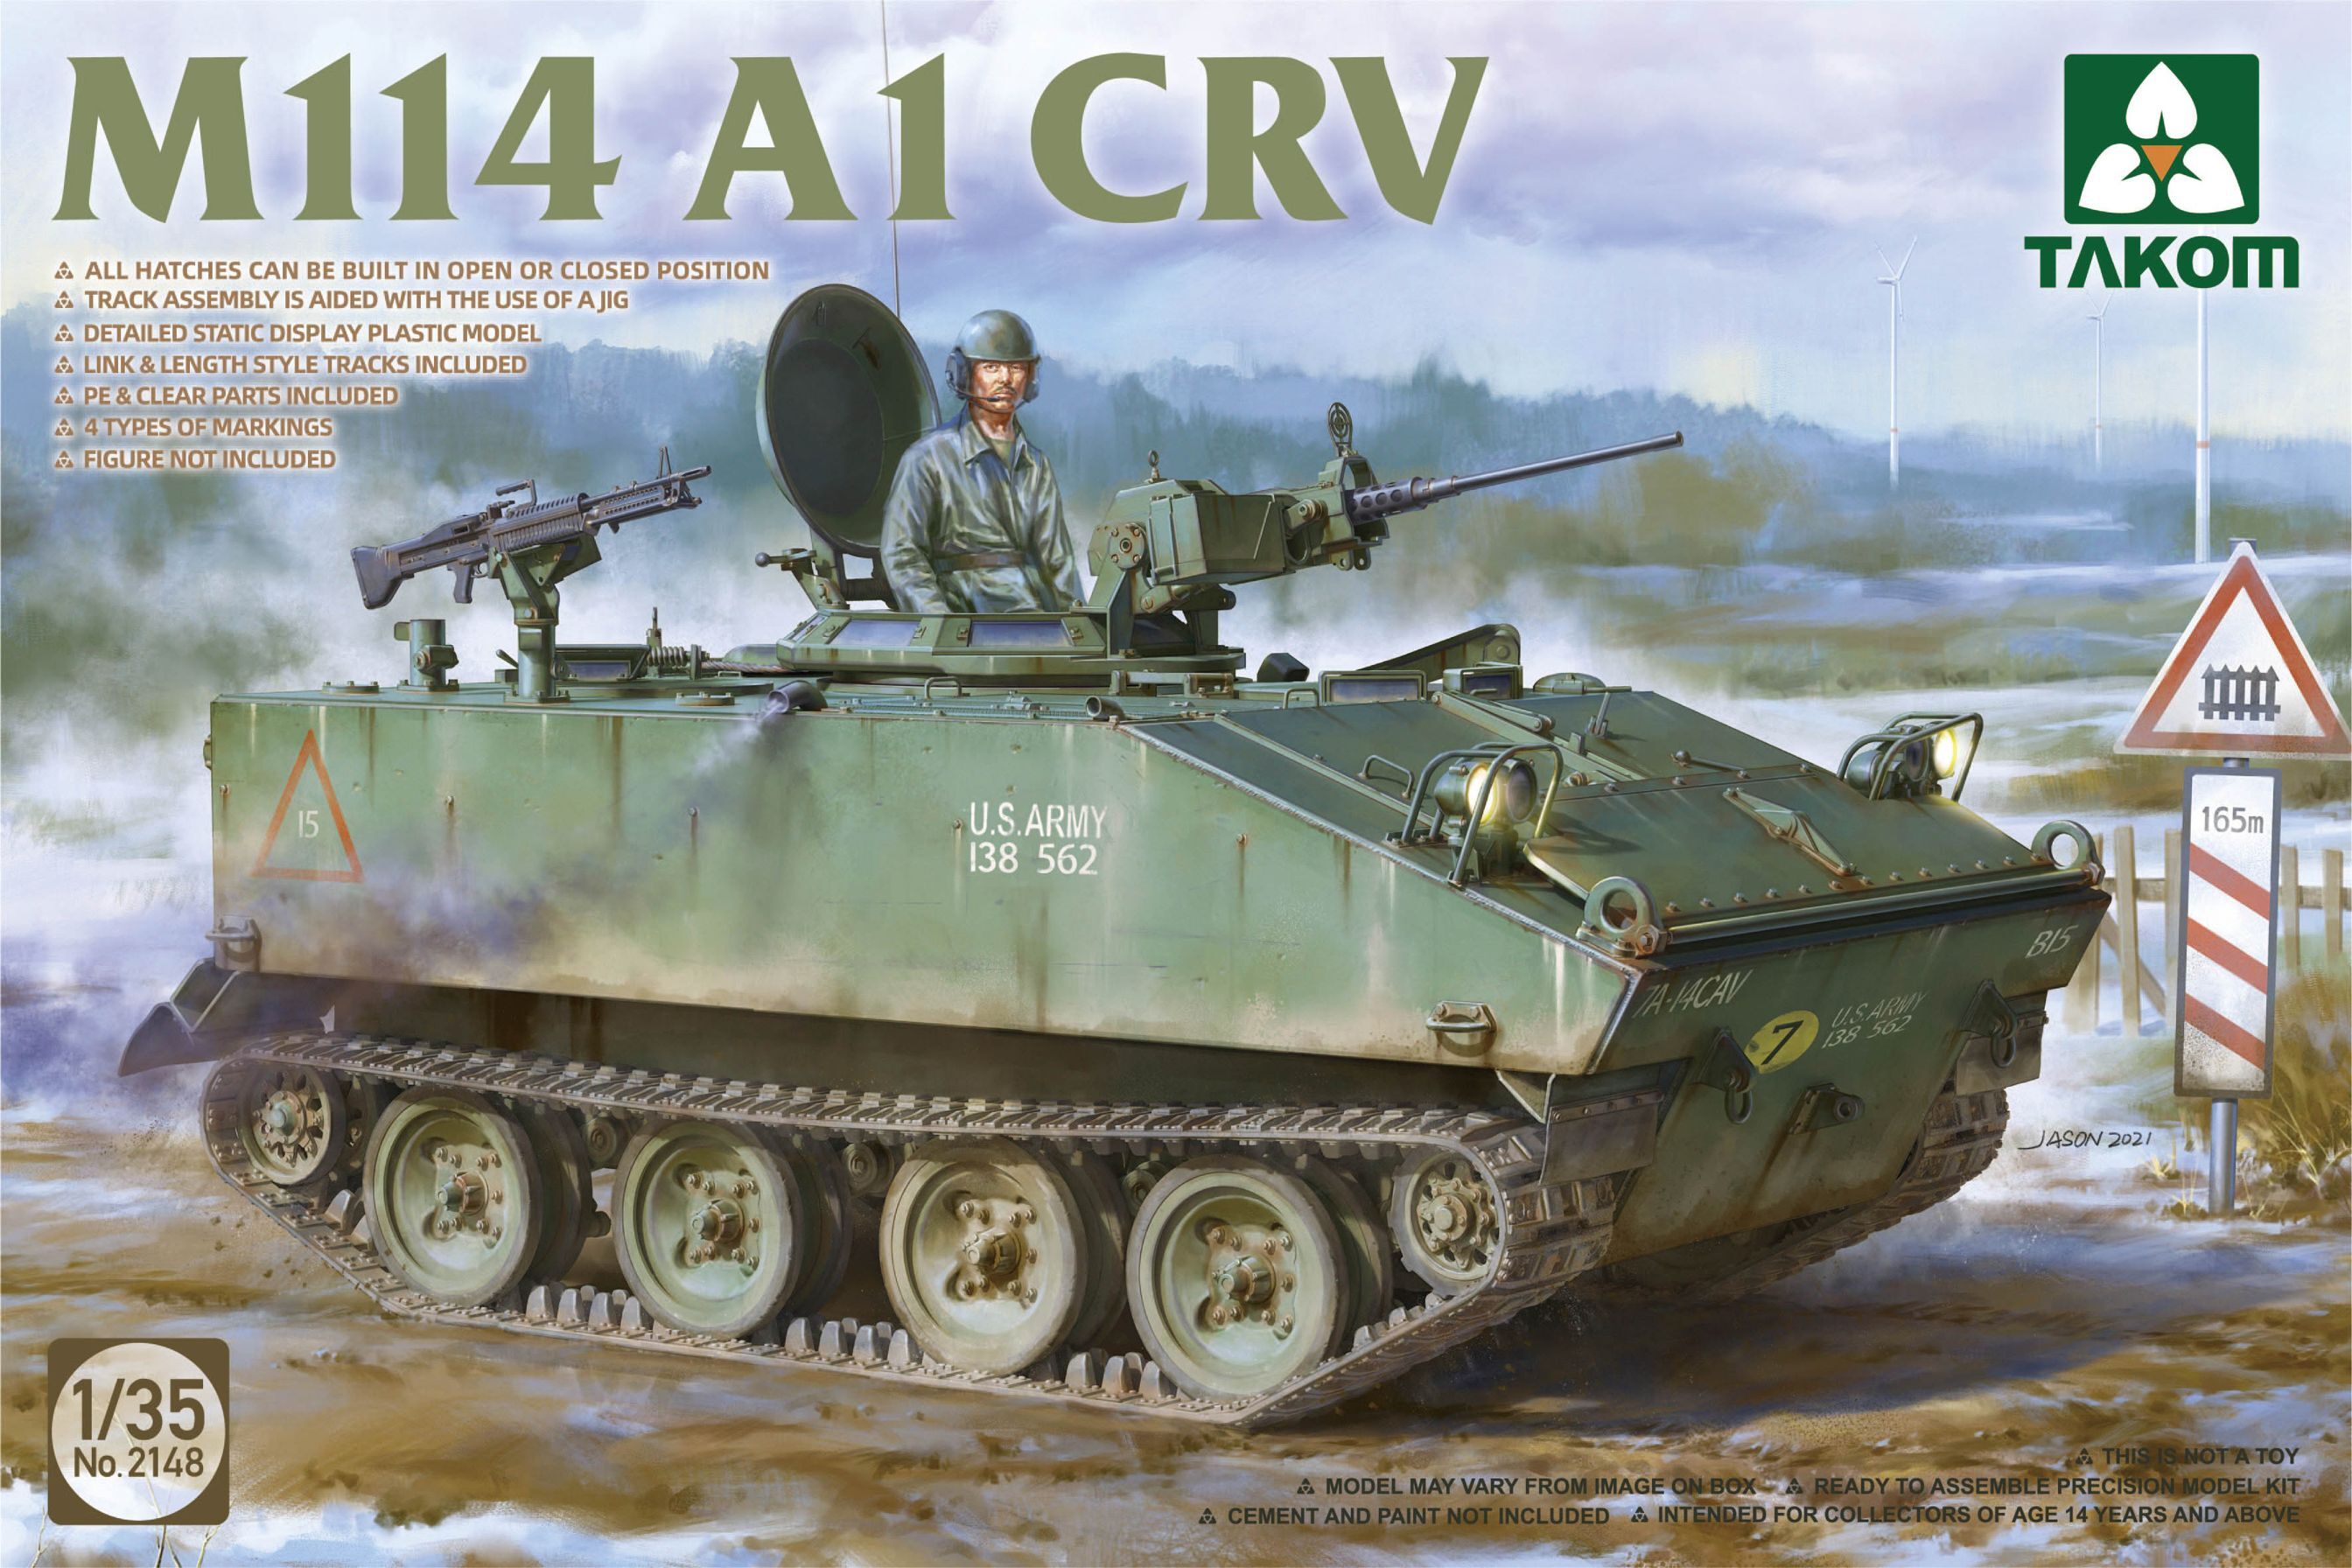 M114 A1 CRV 